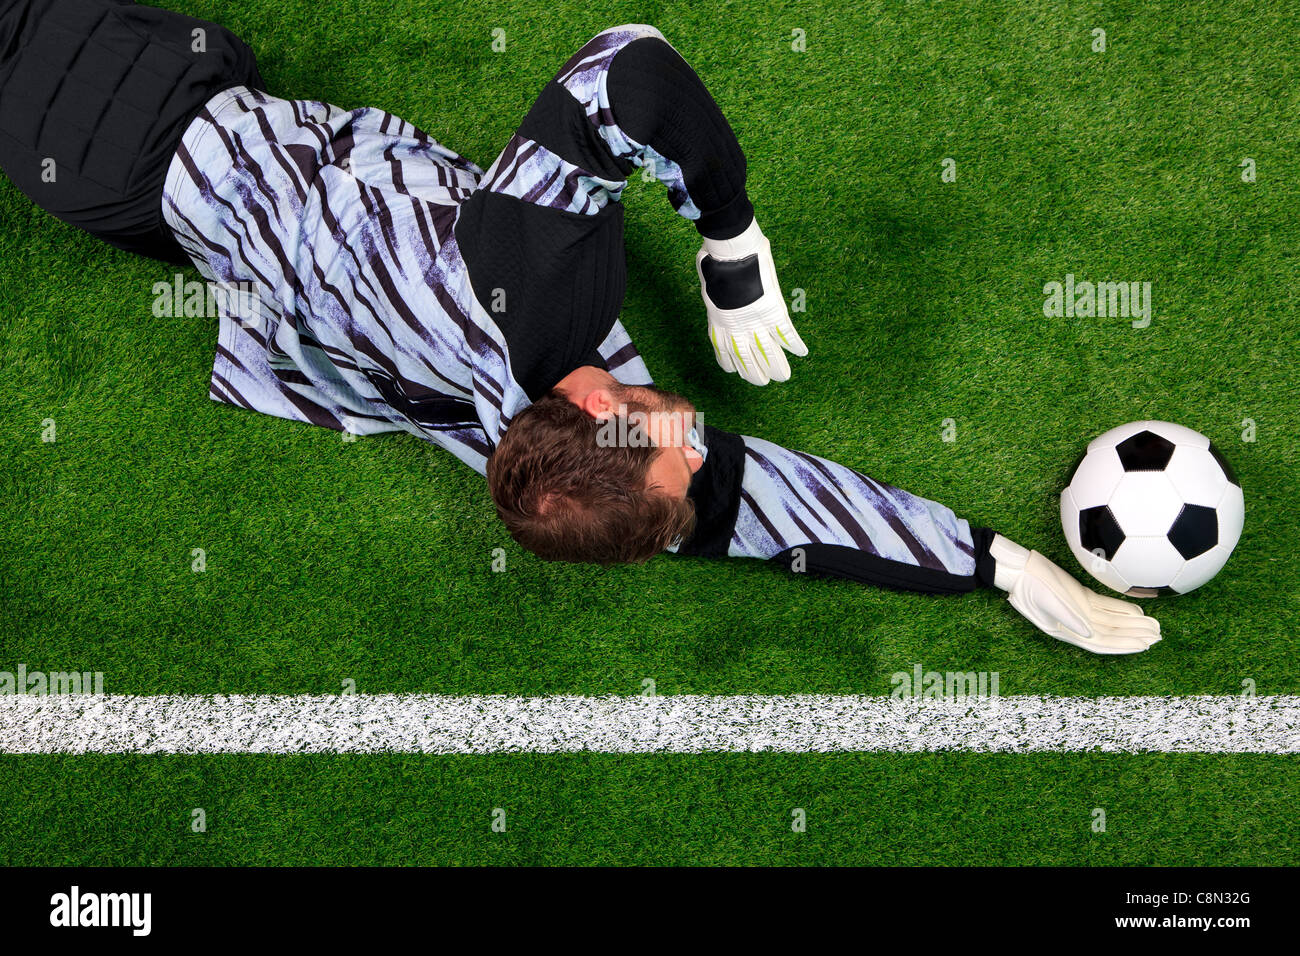 Obenliegende Foto ein Fußball-Torwart, Tauchen, um den Ball vor Überschreiten der Torlinie retten. Stockfoto